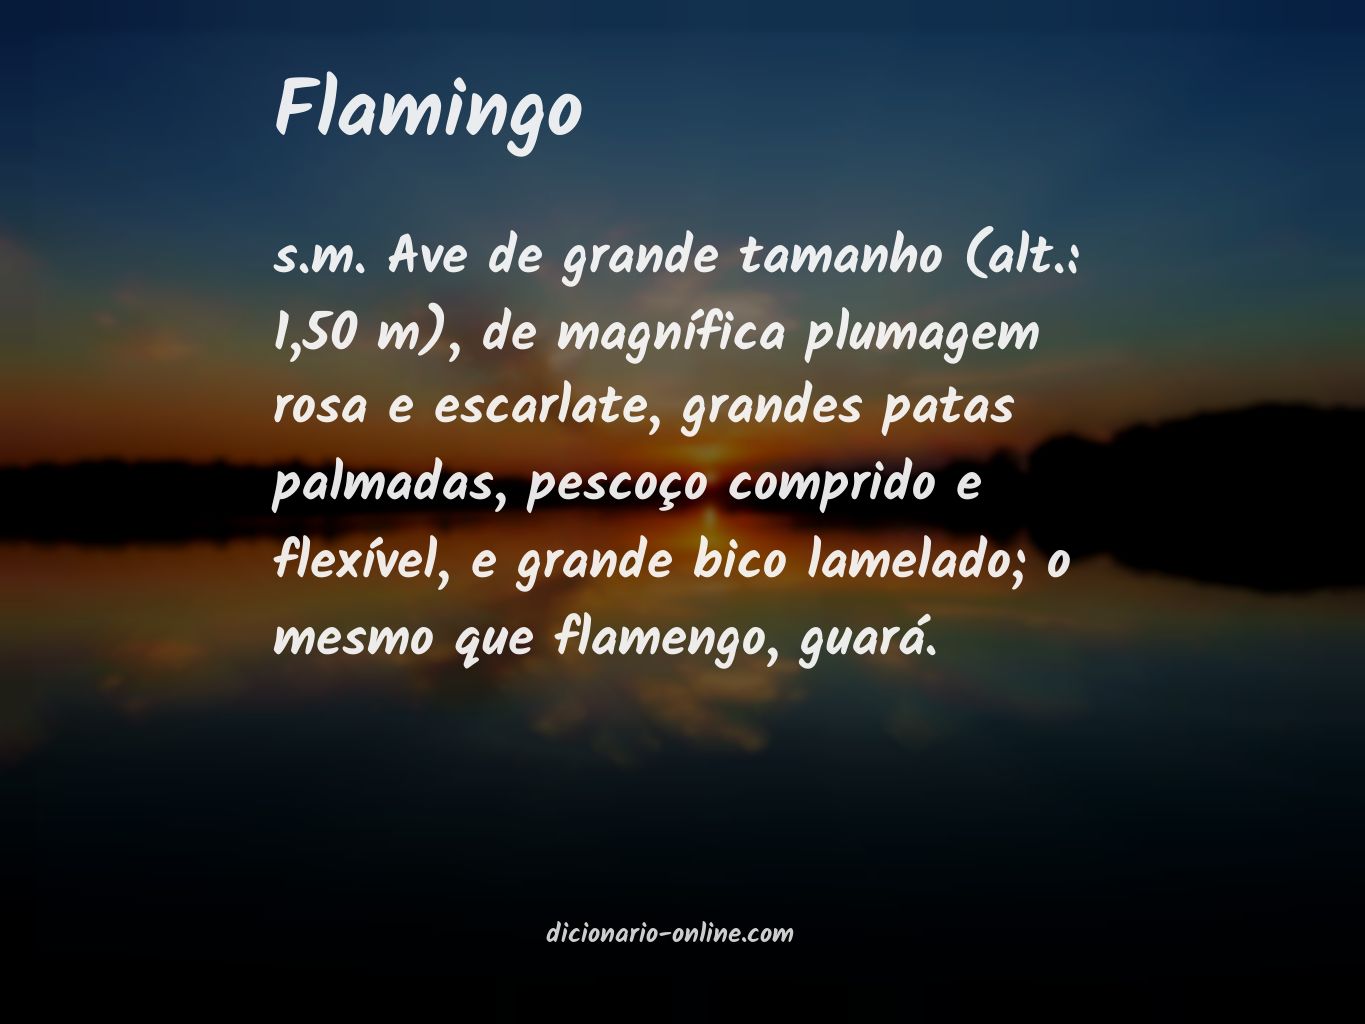 Significado de flamingo